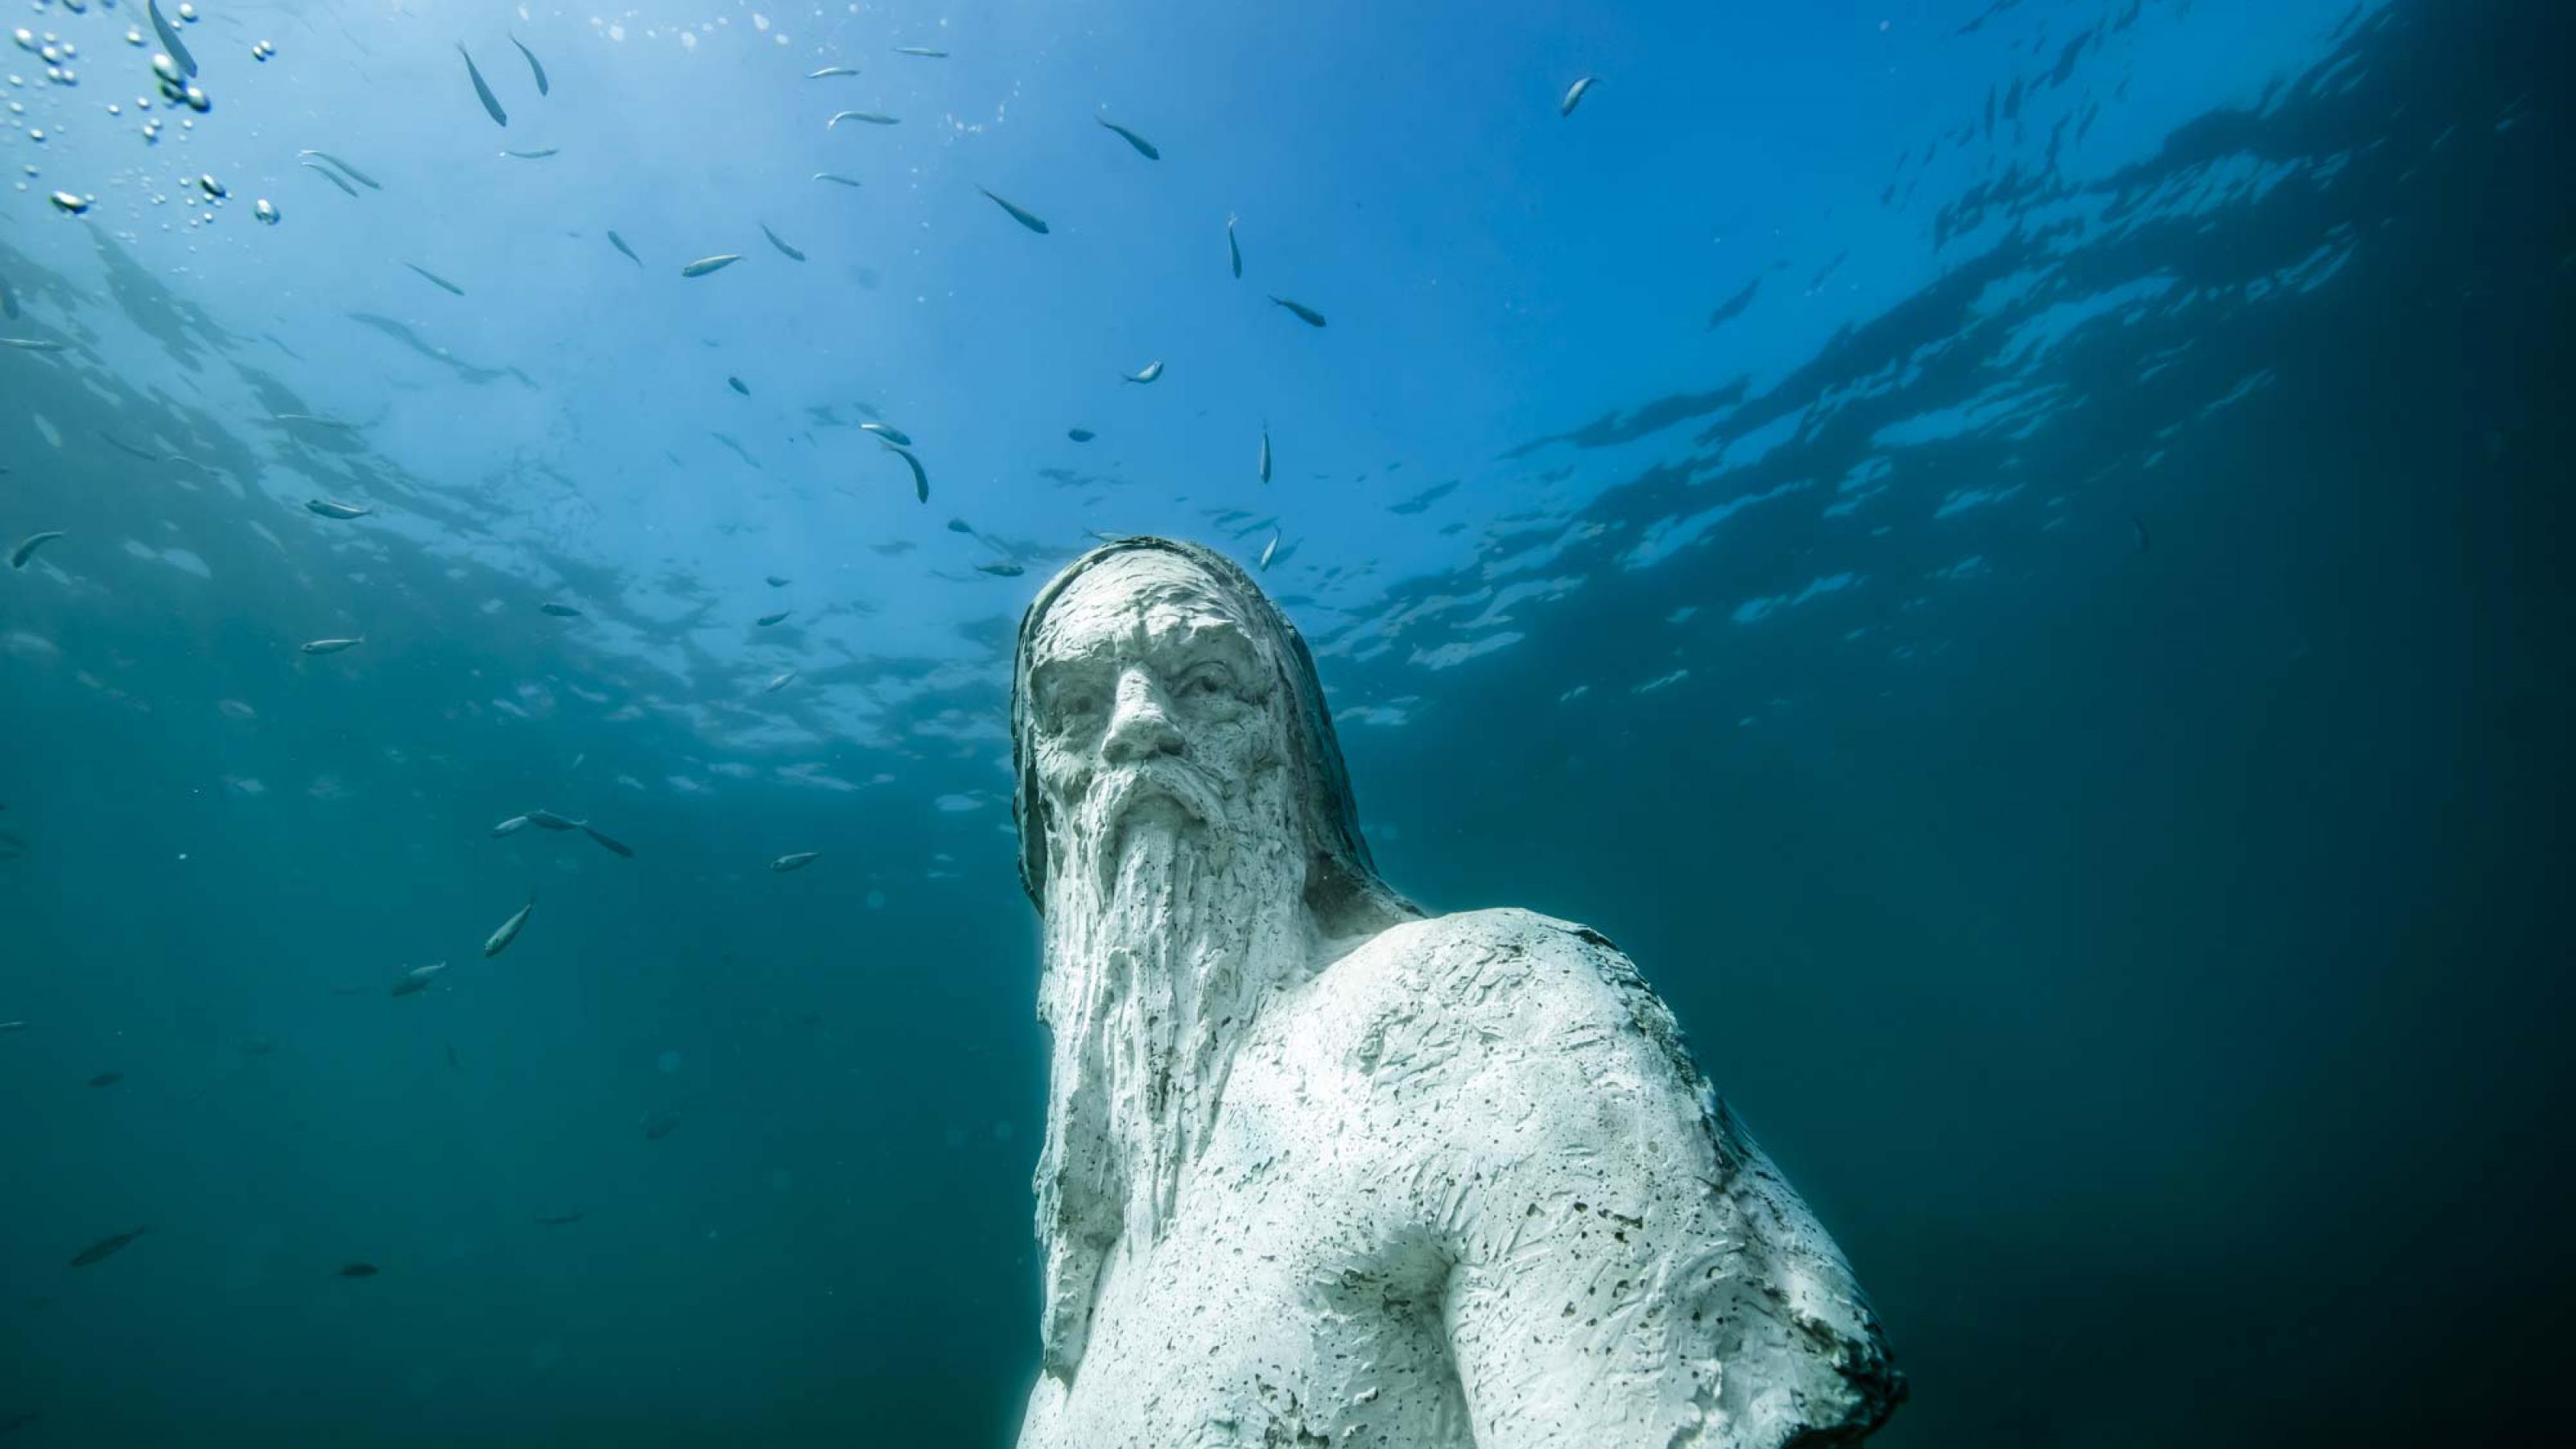 Oberkörper und Kopf der Poseidon-Statue unter Wasser.